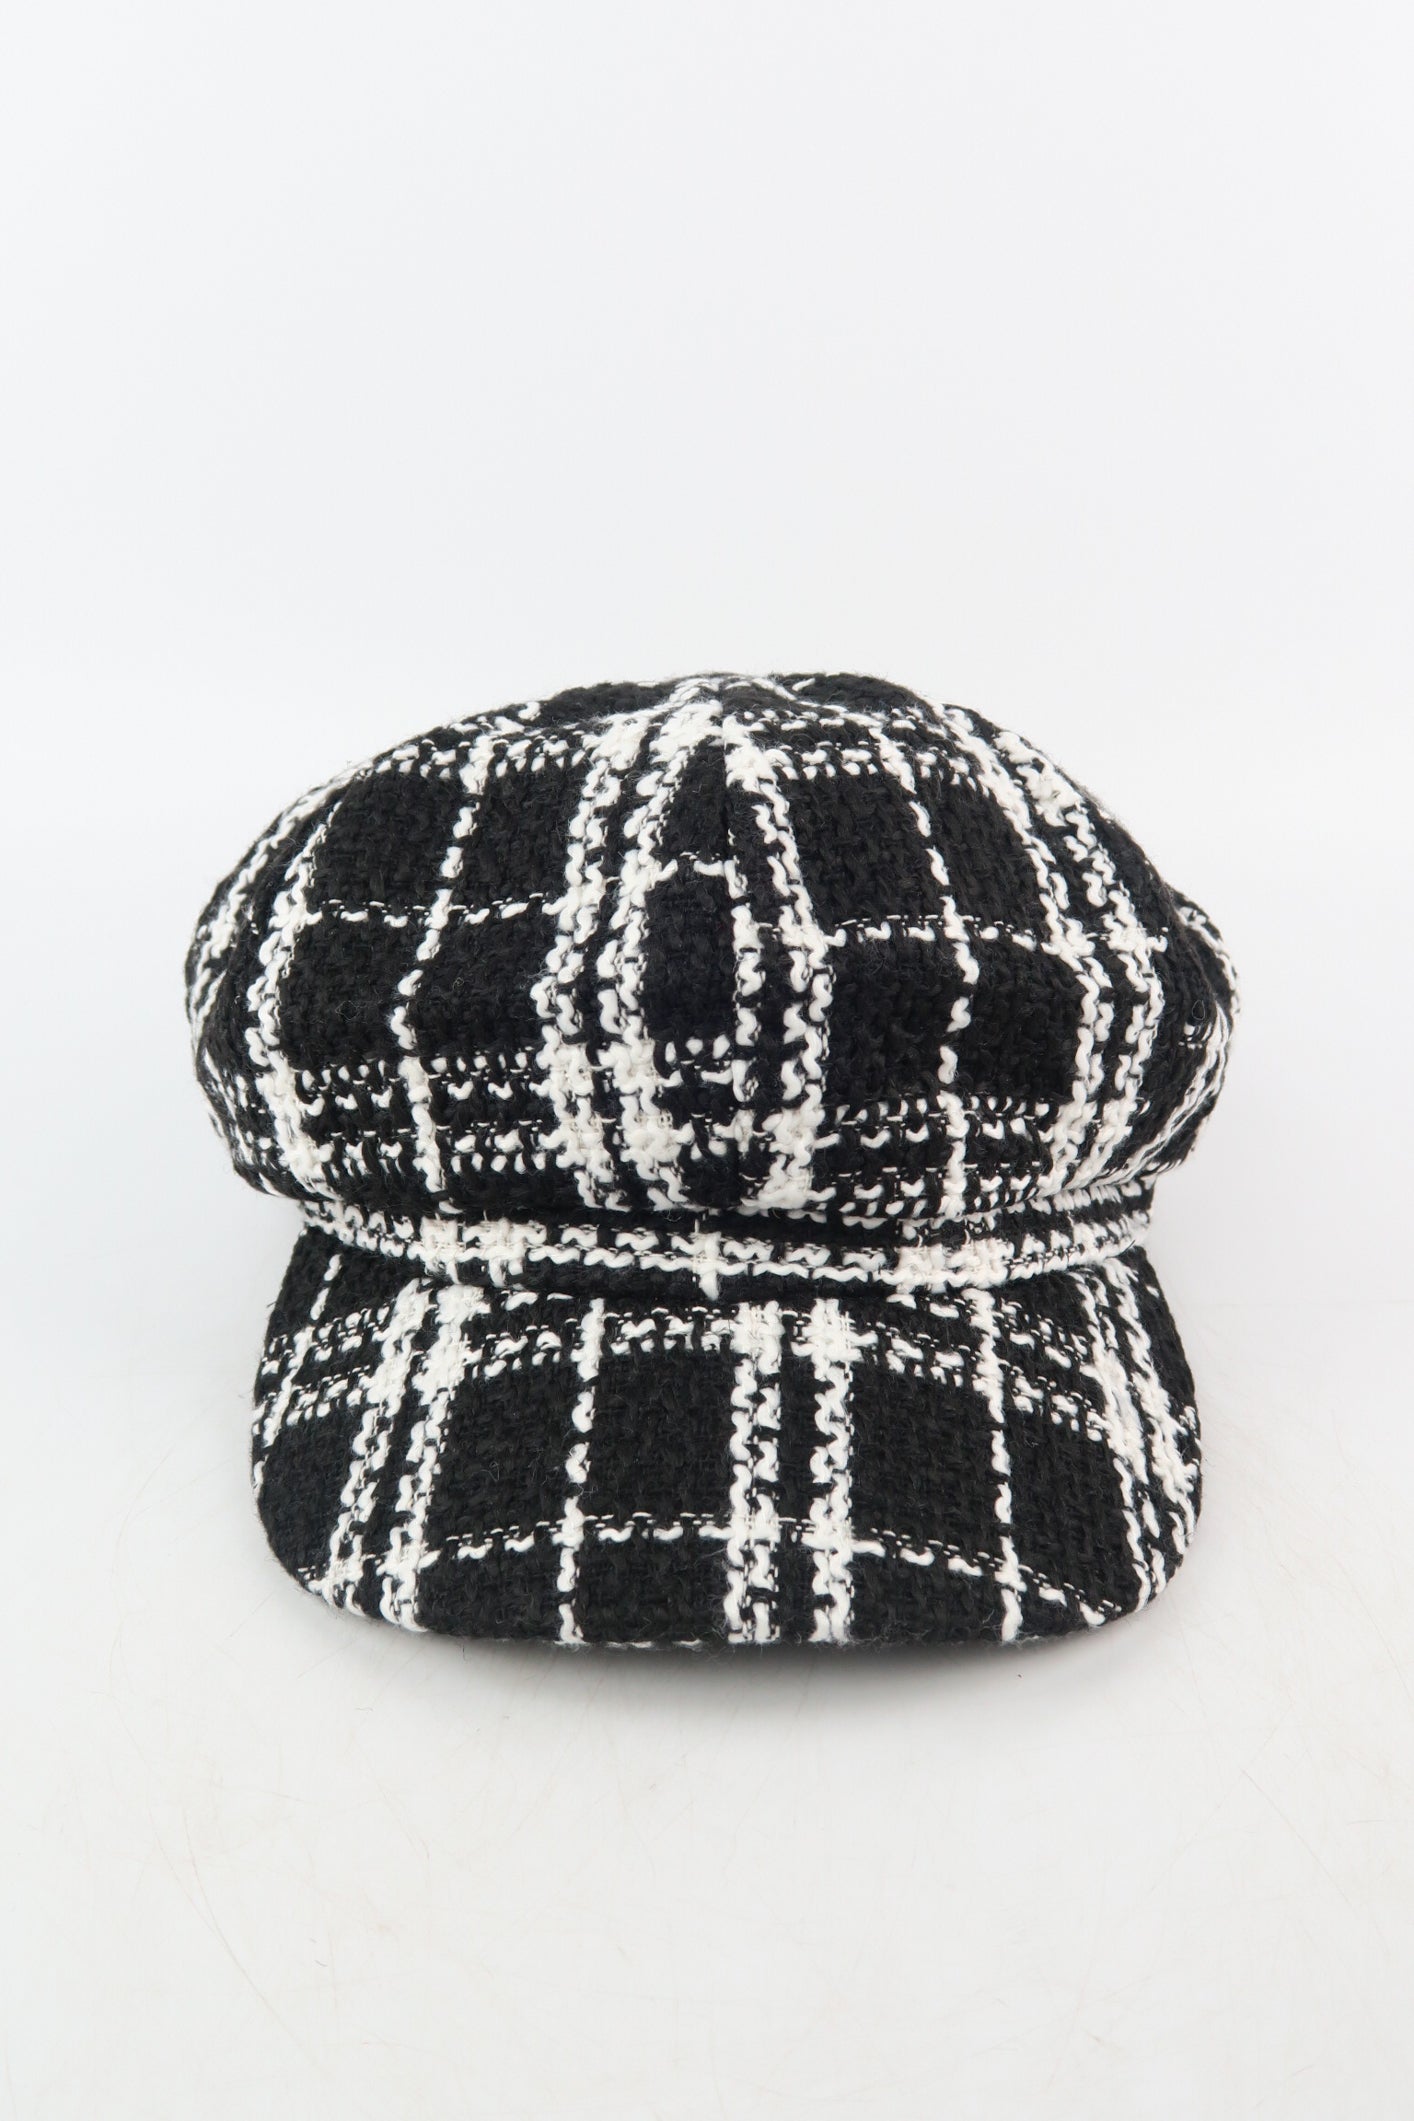 หมวกแฟชั่นผ้าทวีตทรง Cabbie - Cotton Newsboy Gatsby Apple Cabbie Cap